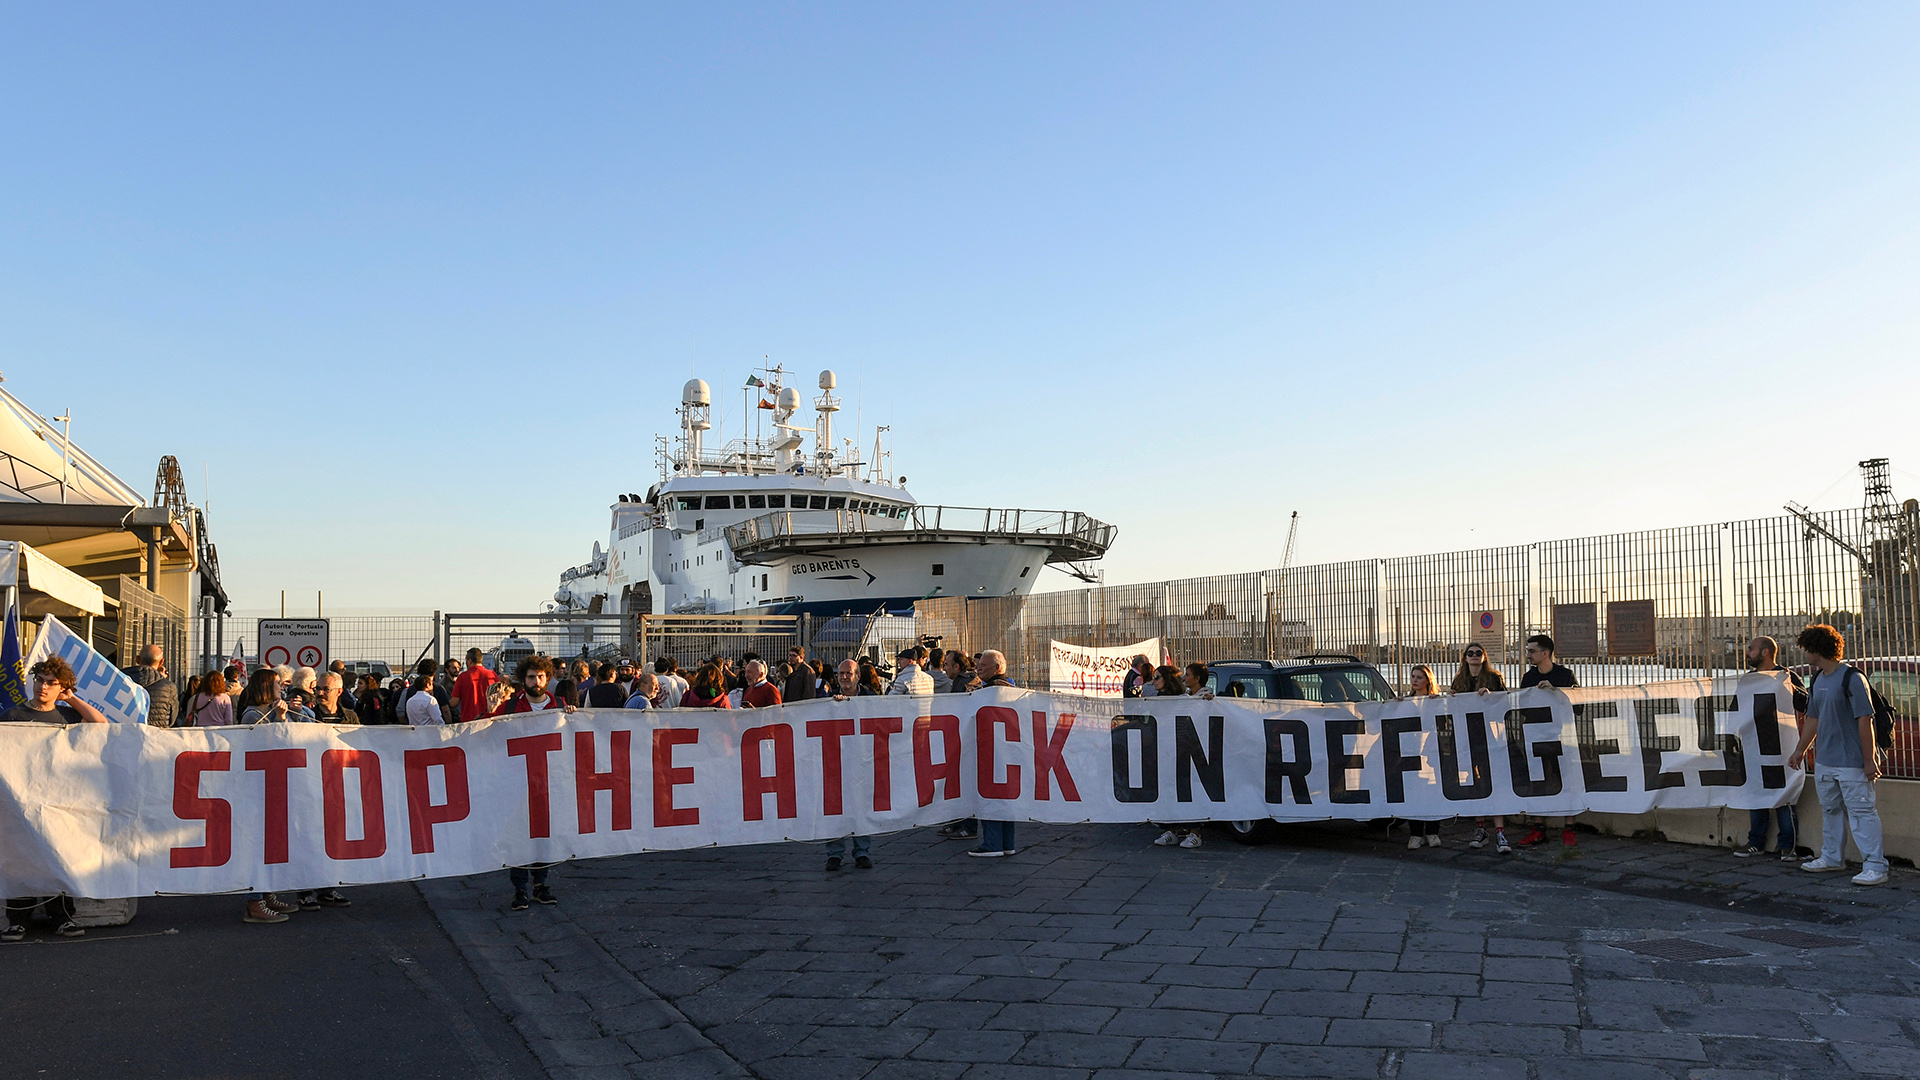 Demonstranten halten ein Transparent mit der Aufschrift "Stop the Attack on Refugees" (Stoppt den Angriff auf Flüchtlinge) vor dem Rettungsschiff  "Geo Barents" im Hafen von Catania.  | dpa